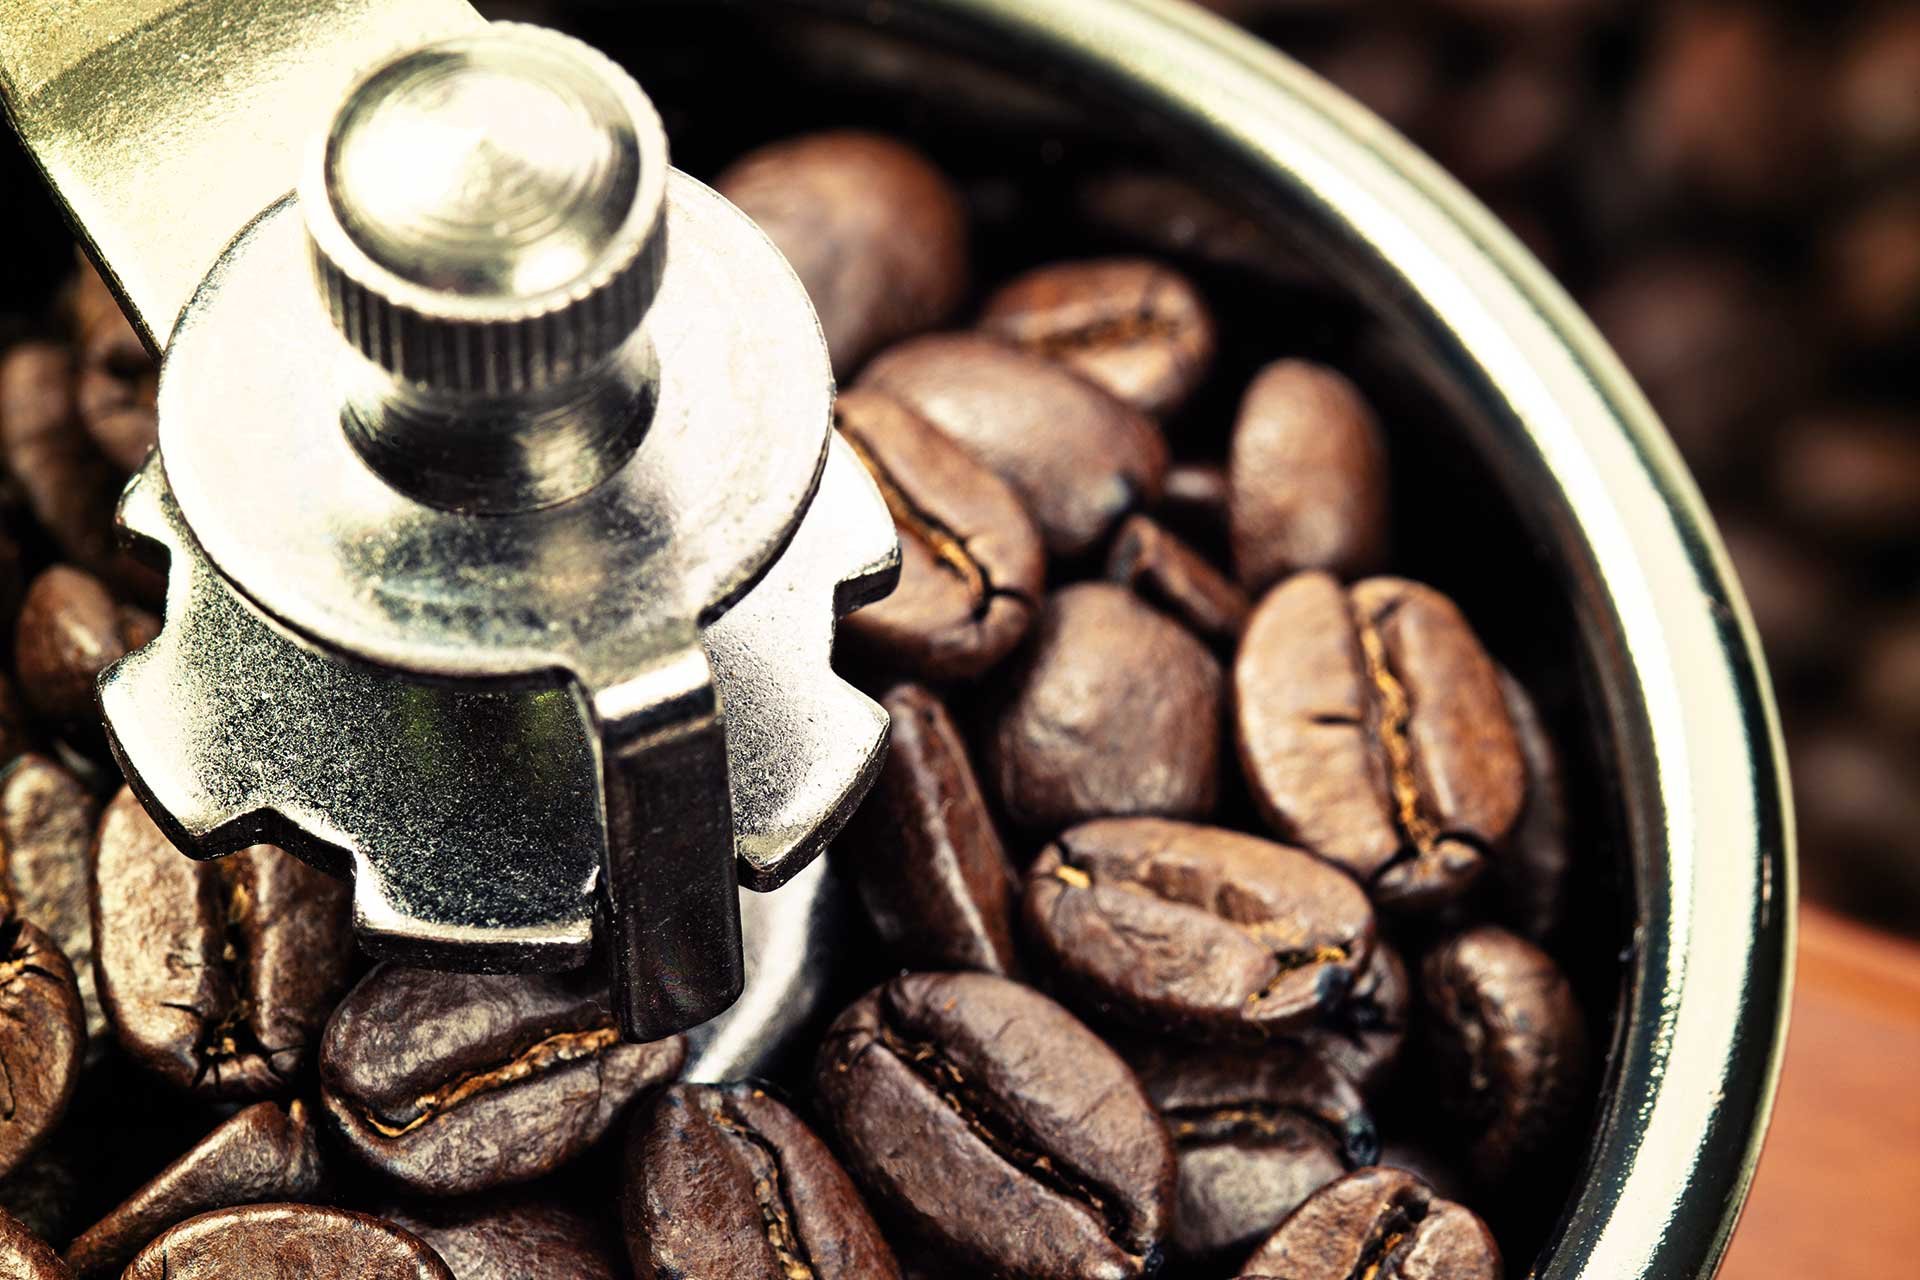 Erfreut sich dank der aktuellen Kaffeetrends wachsender Beliebtheit: Die Kaffeemühle.